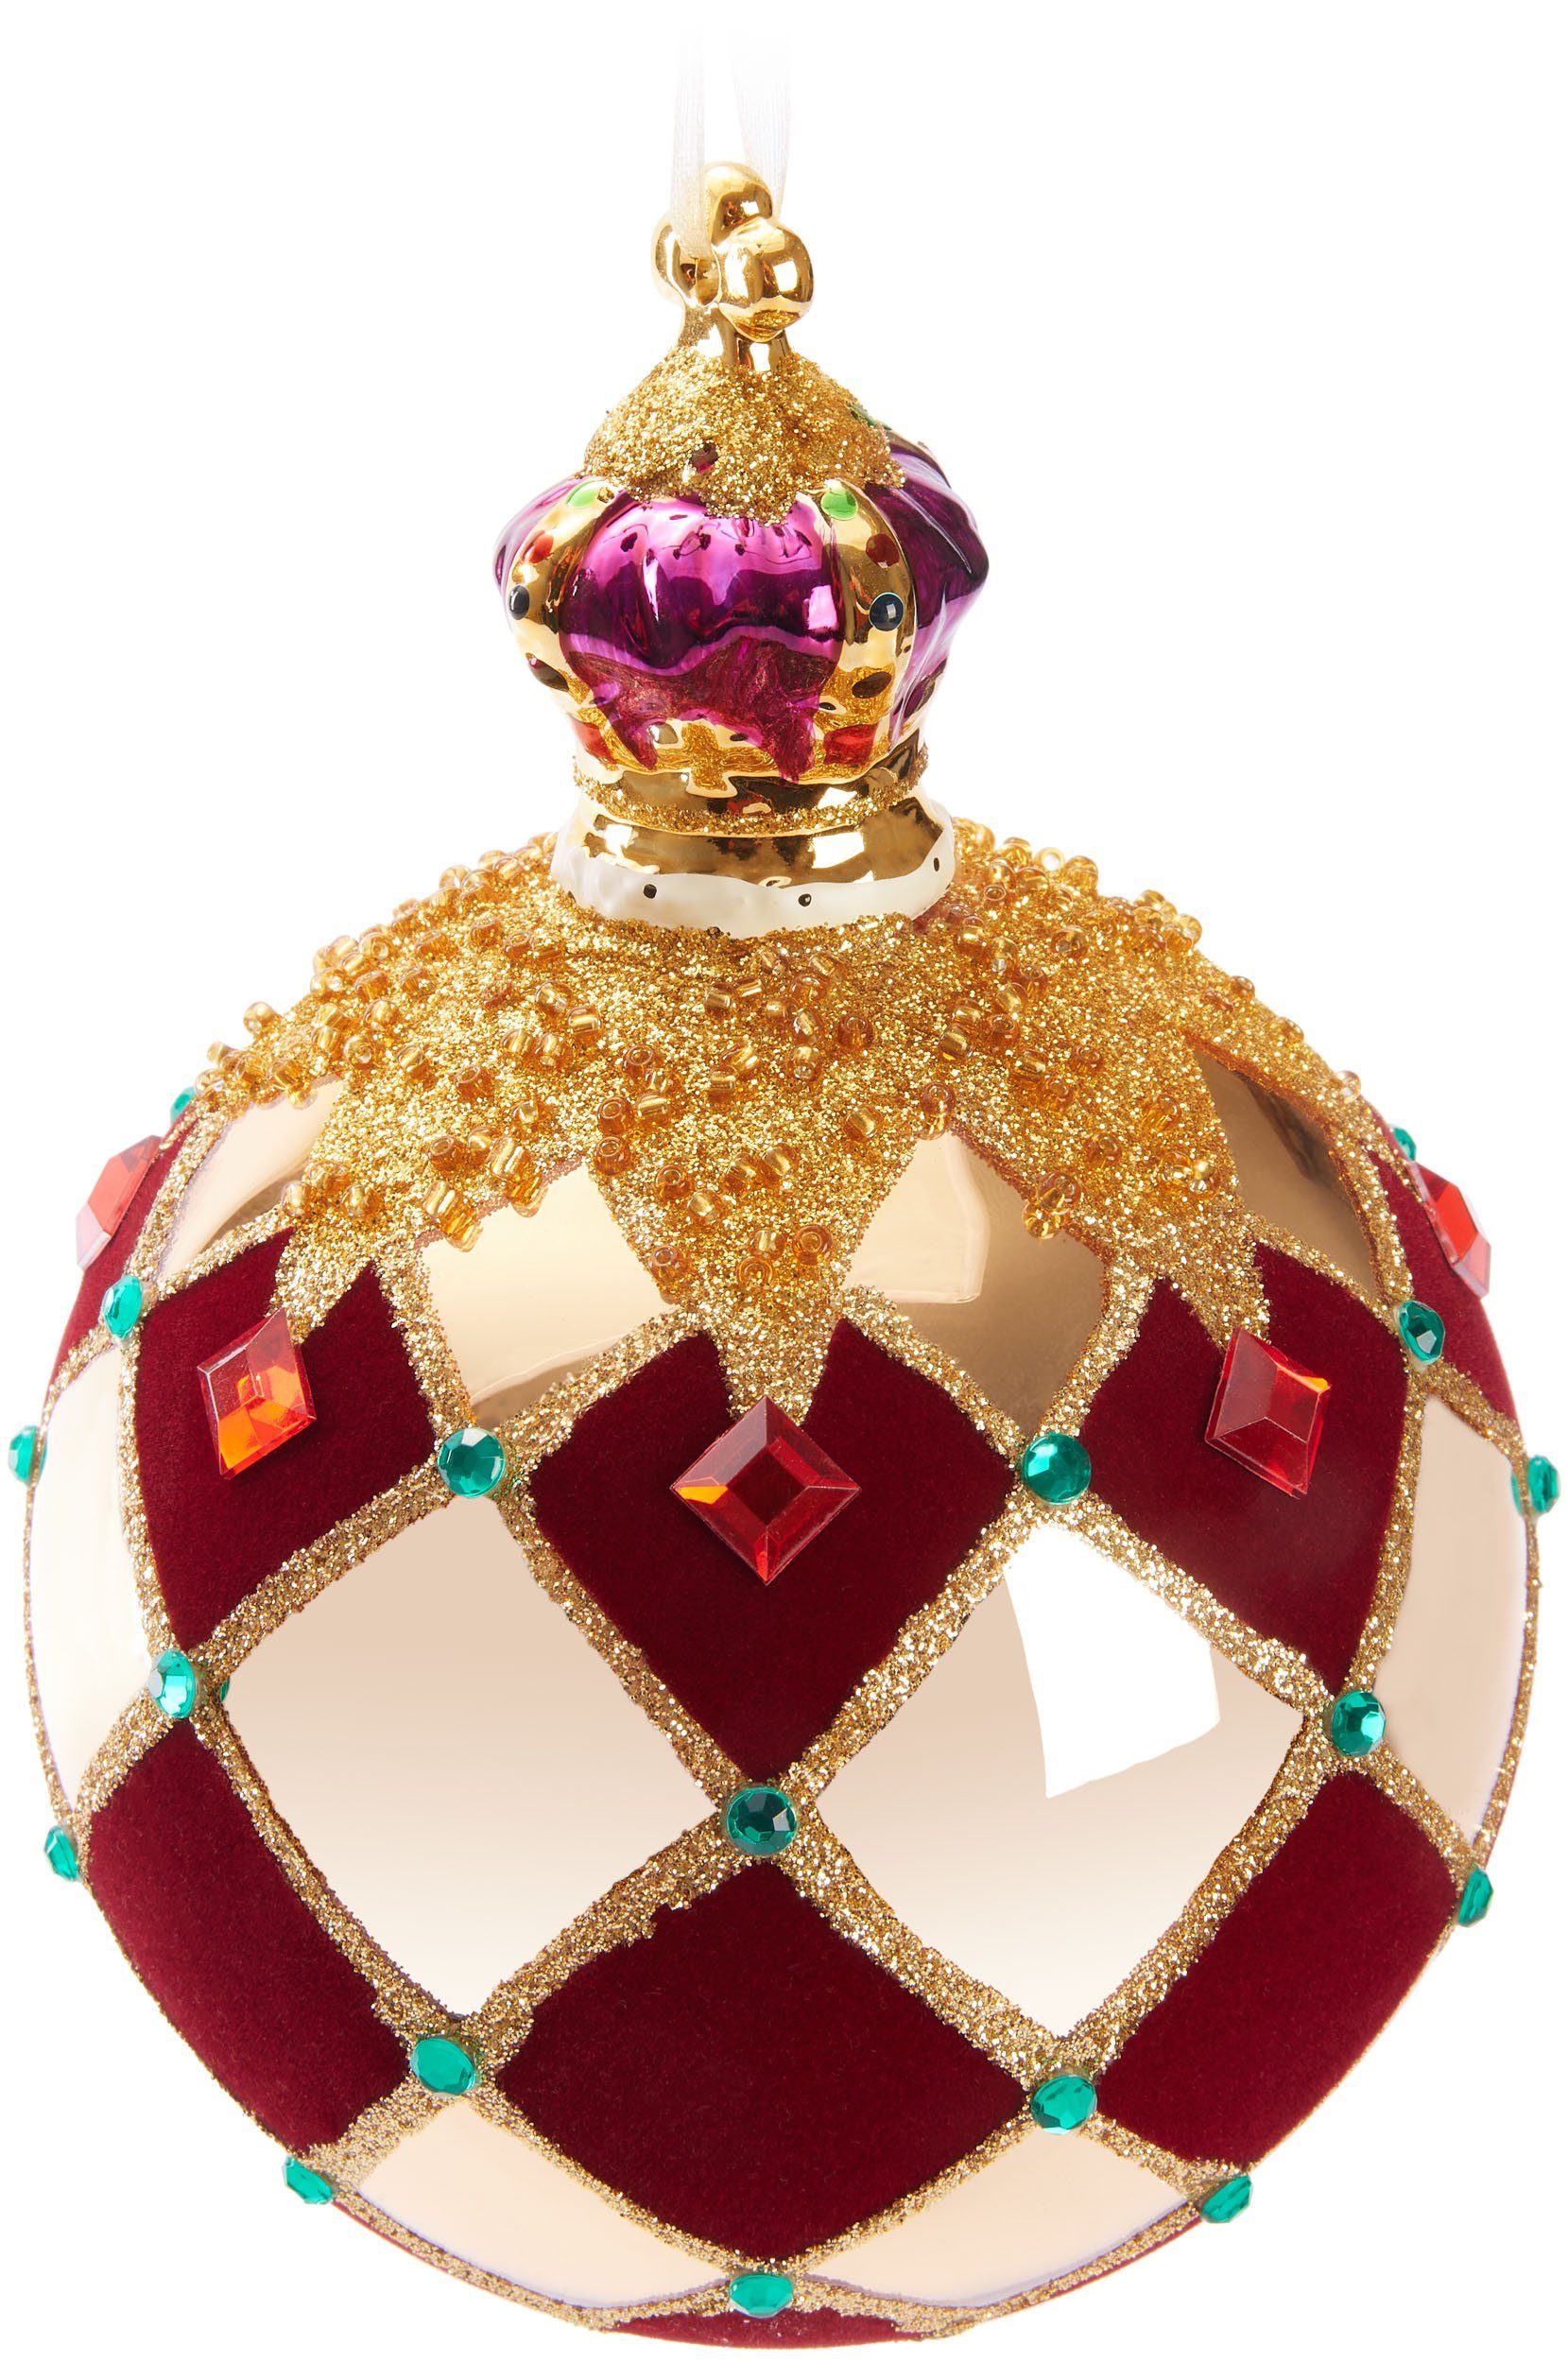 BRUBAKER Weihnachtsbaumkugel Premium Weihnachtskugel "Royal King" - Königliche Baumkugel Gold Rot (1 St), Kariert mit Samt, Glitzer und Krone - 14 cm große Baumkugel aus Glas